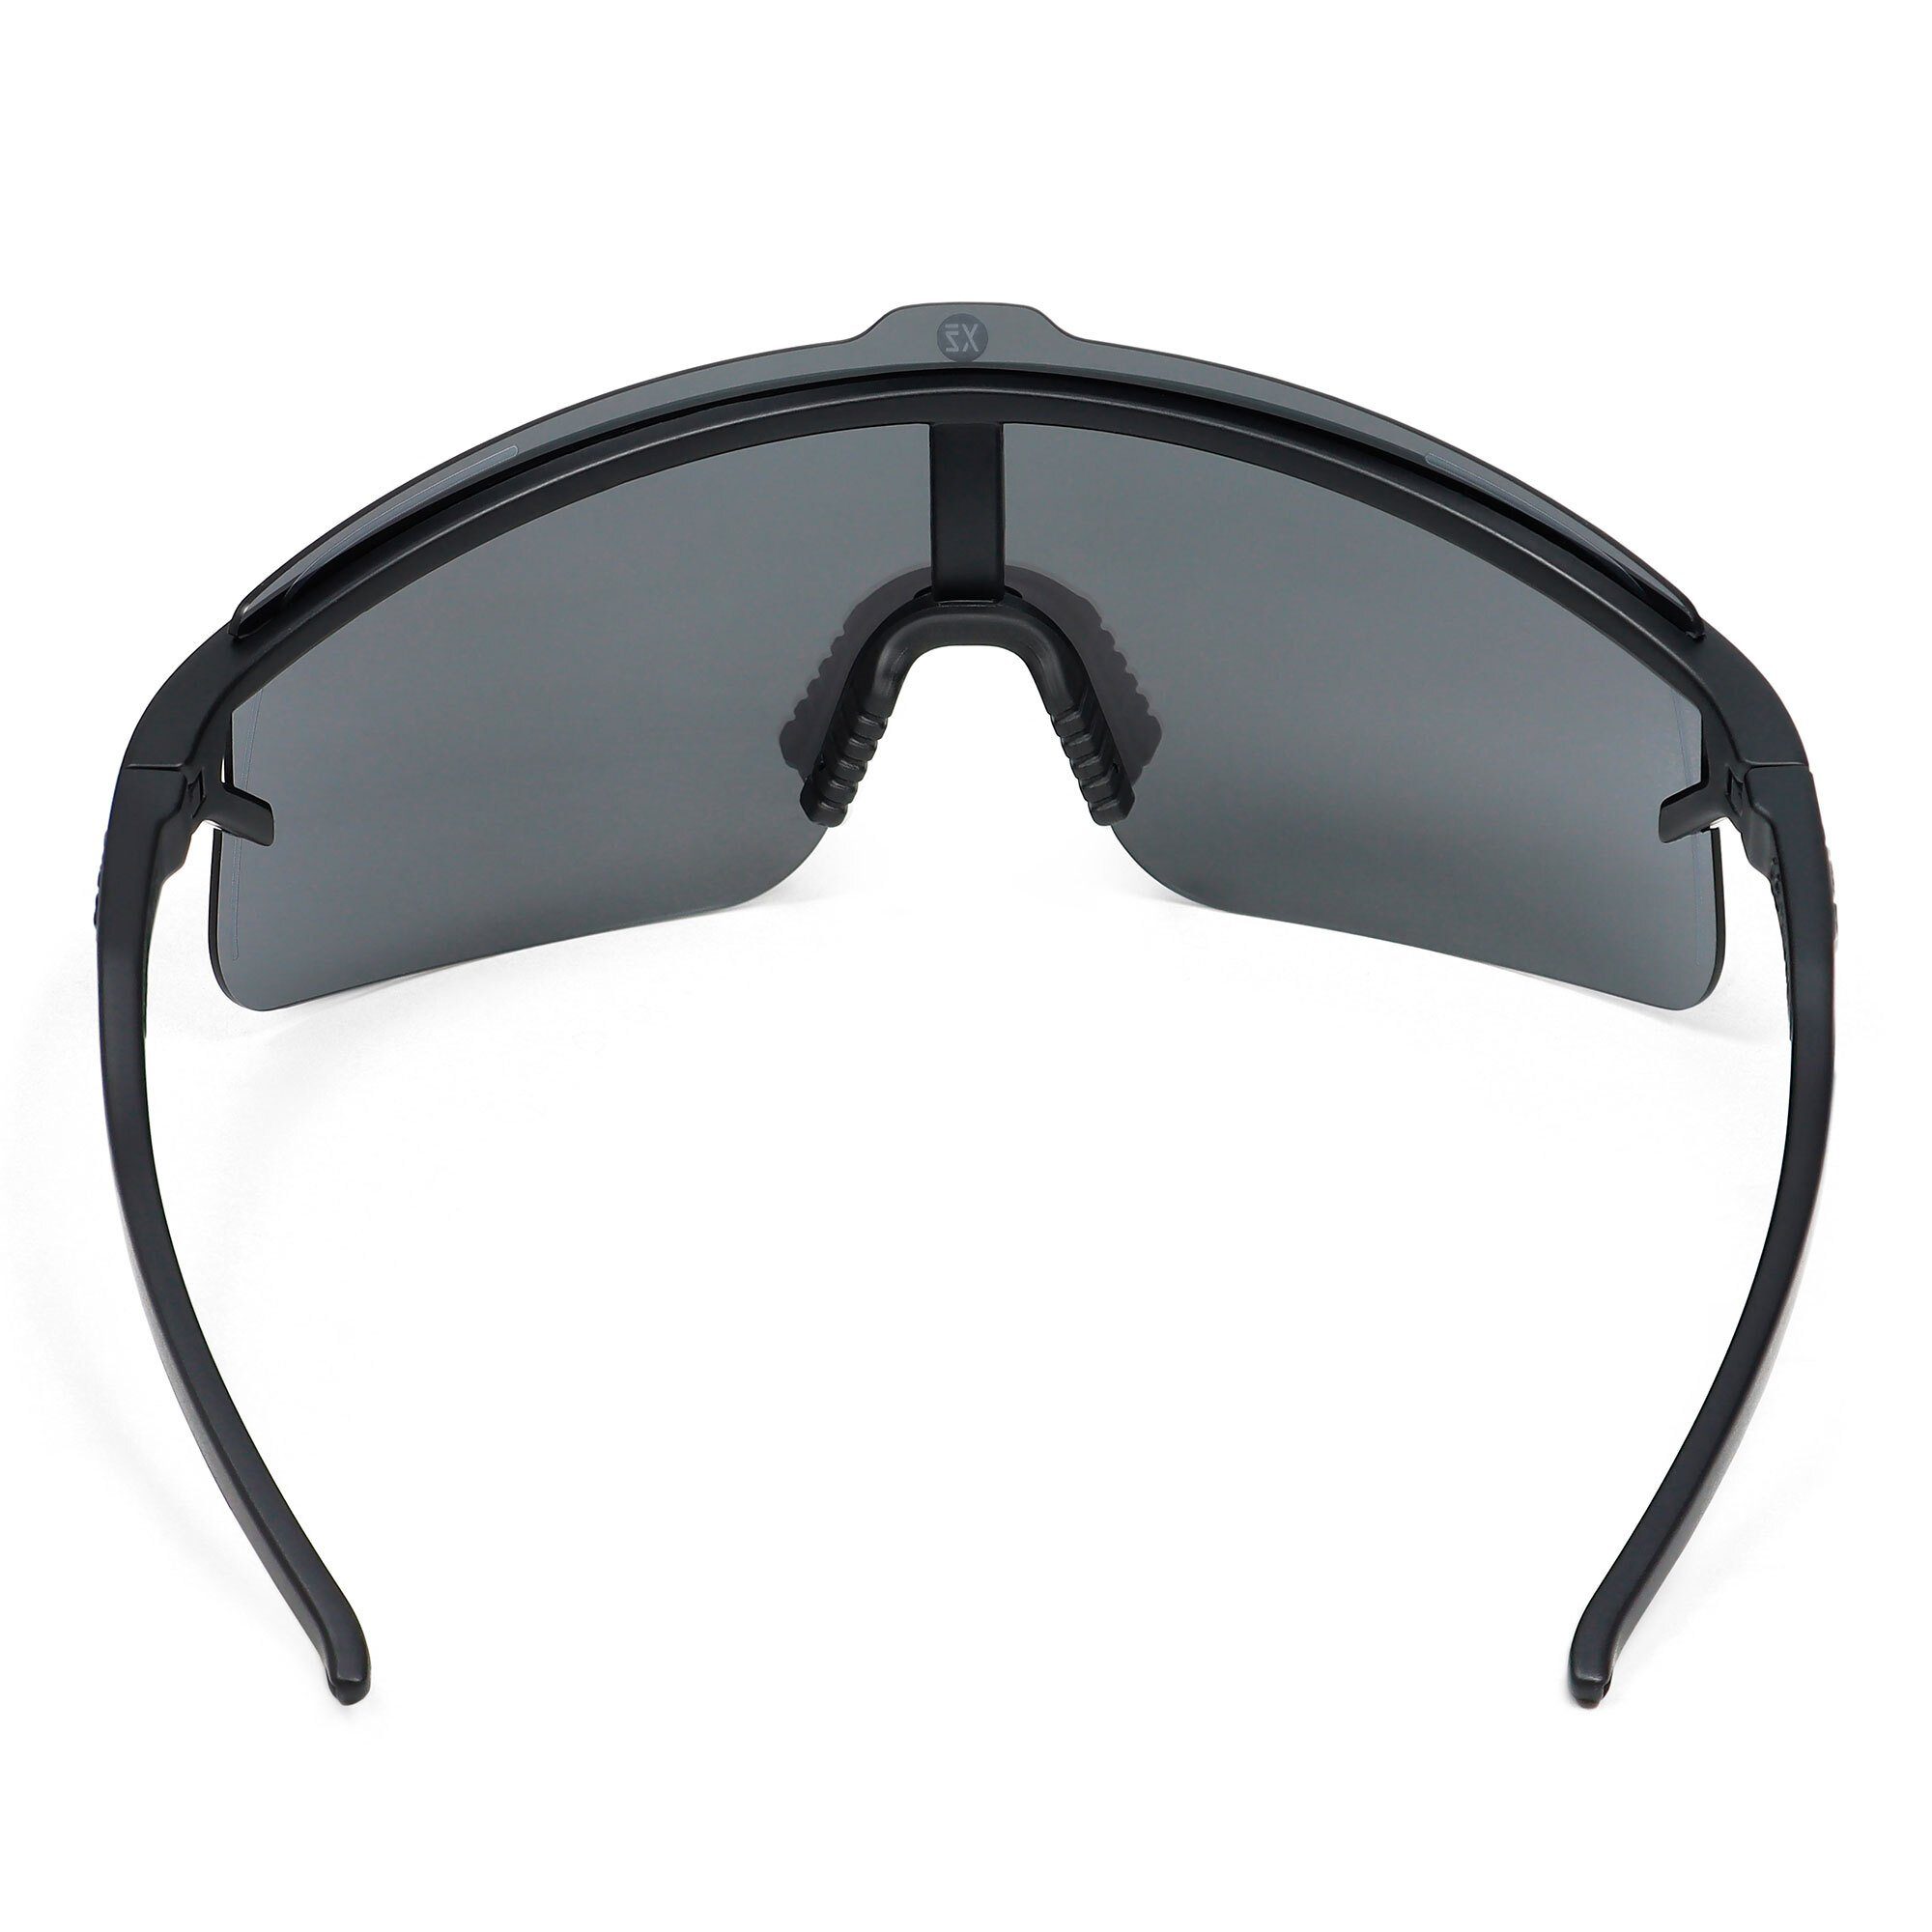 silber und schwarz Komfort SUNSHADE / YEAZ Style Sicht, sport-sonnenbrille perfekte Erlebe black/silver, Sportbrille